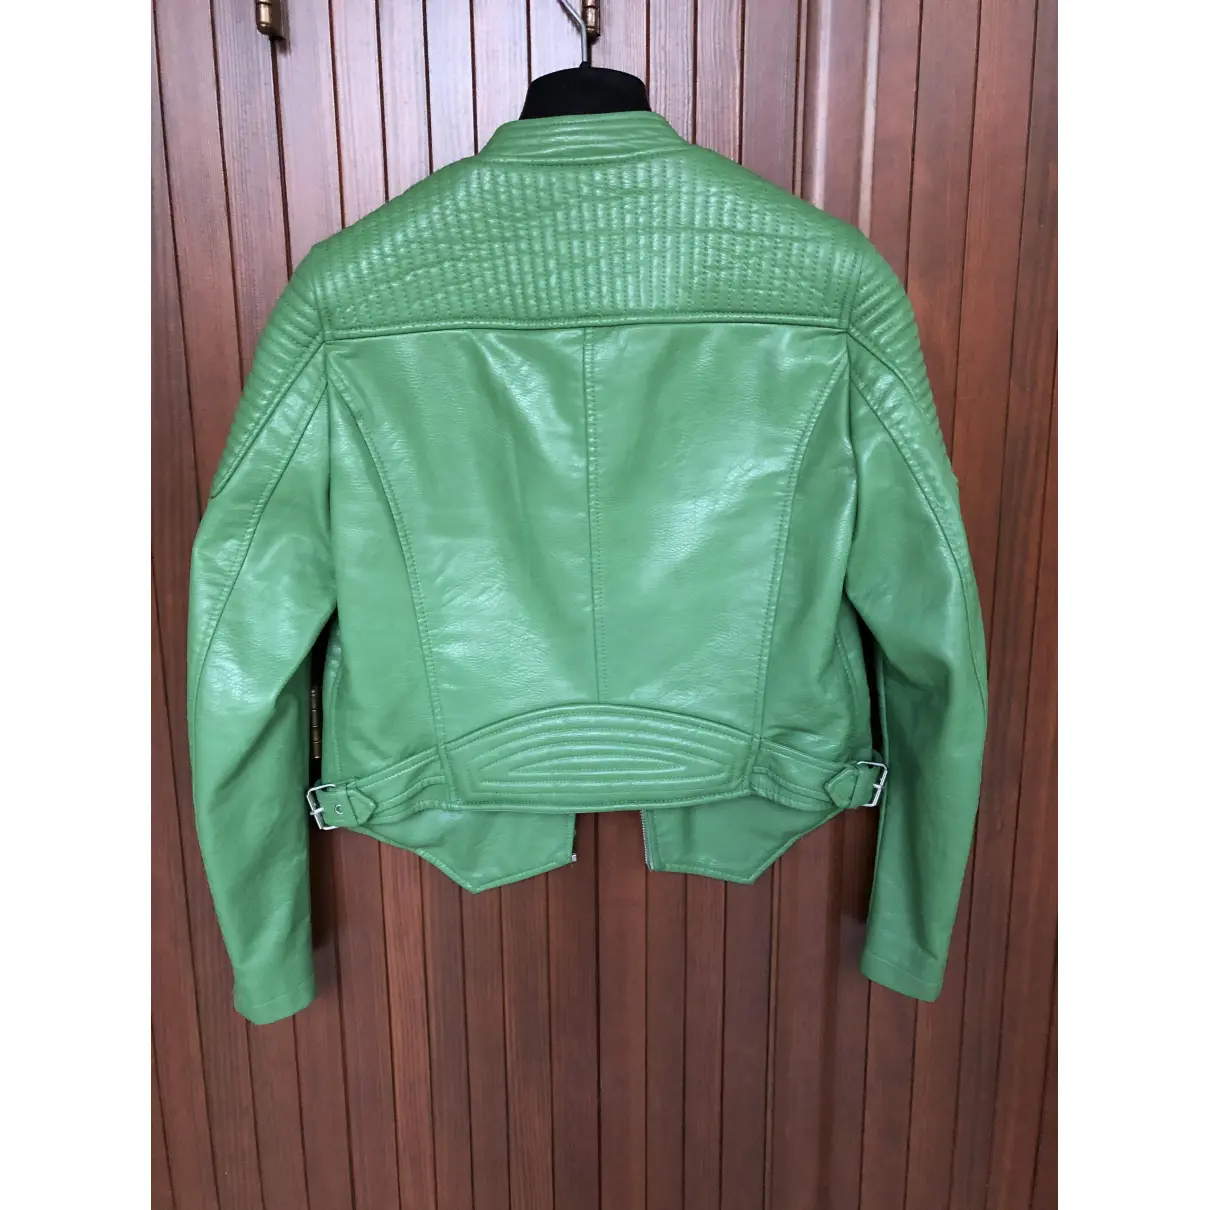 Buy Zara Biker jacket online